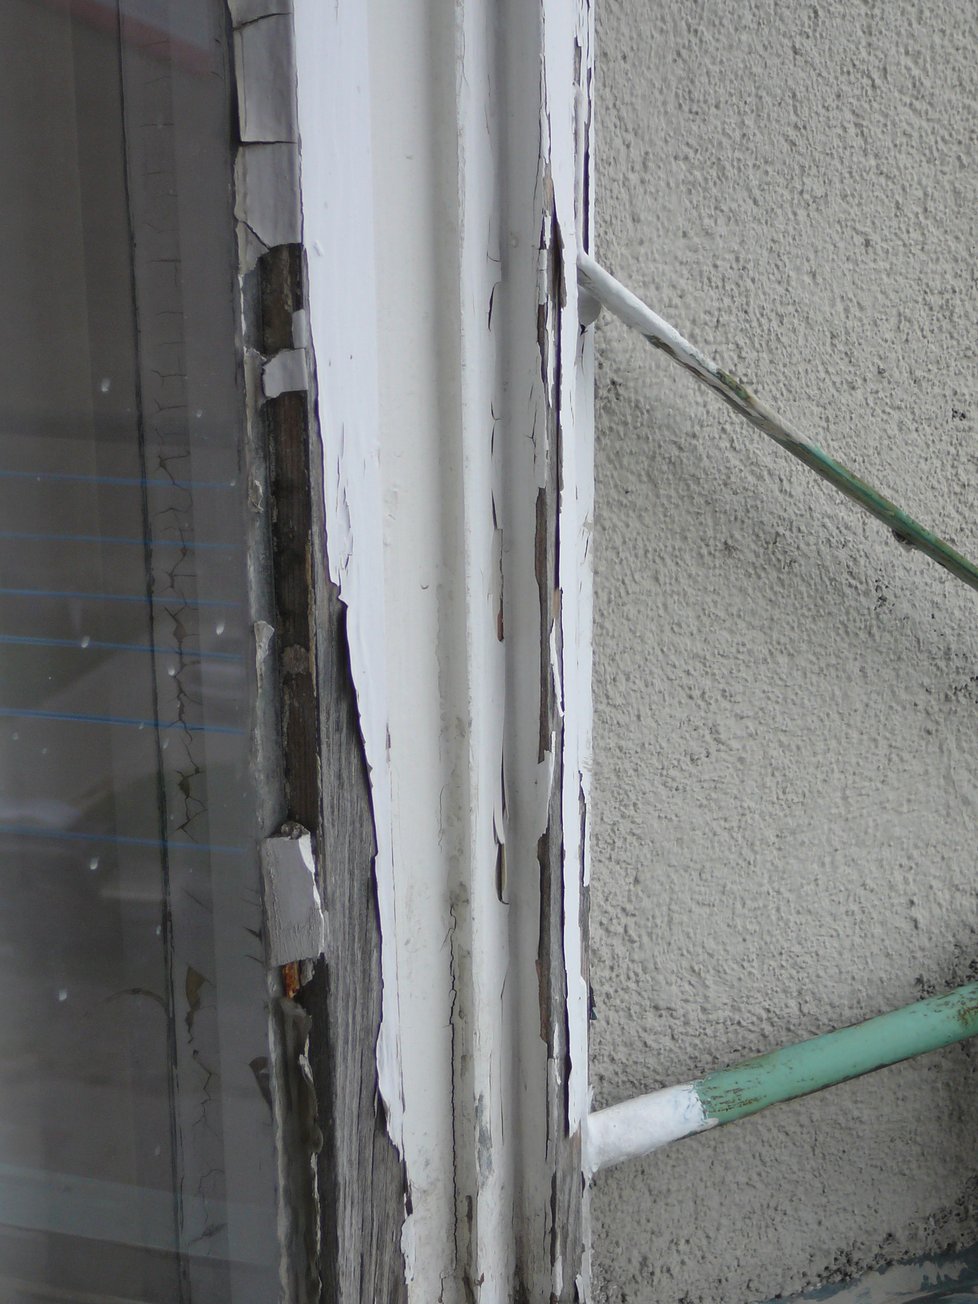 Okna v bytovém domě přímo v centru Opavy jsou už dávno nepoužitelná. Když prší, zatéká do bytů a tvoří se plíseň. Vodní mapy na stěnách jsou klasickým úkazem.